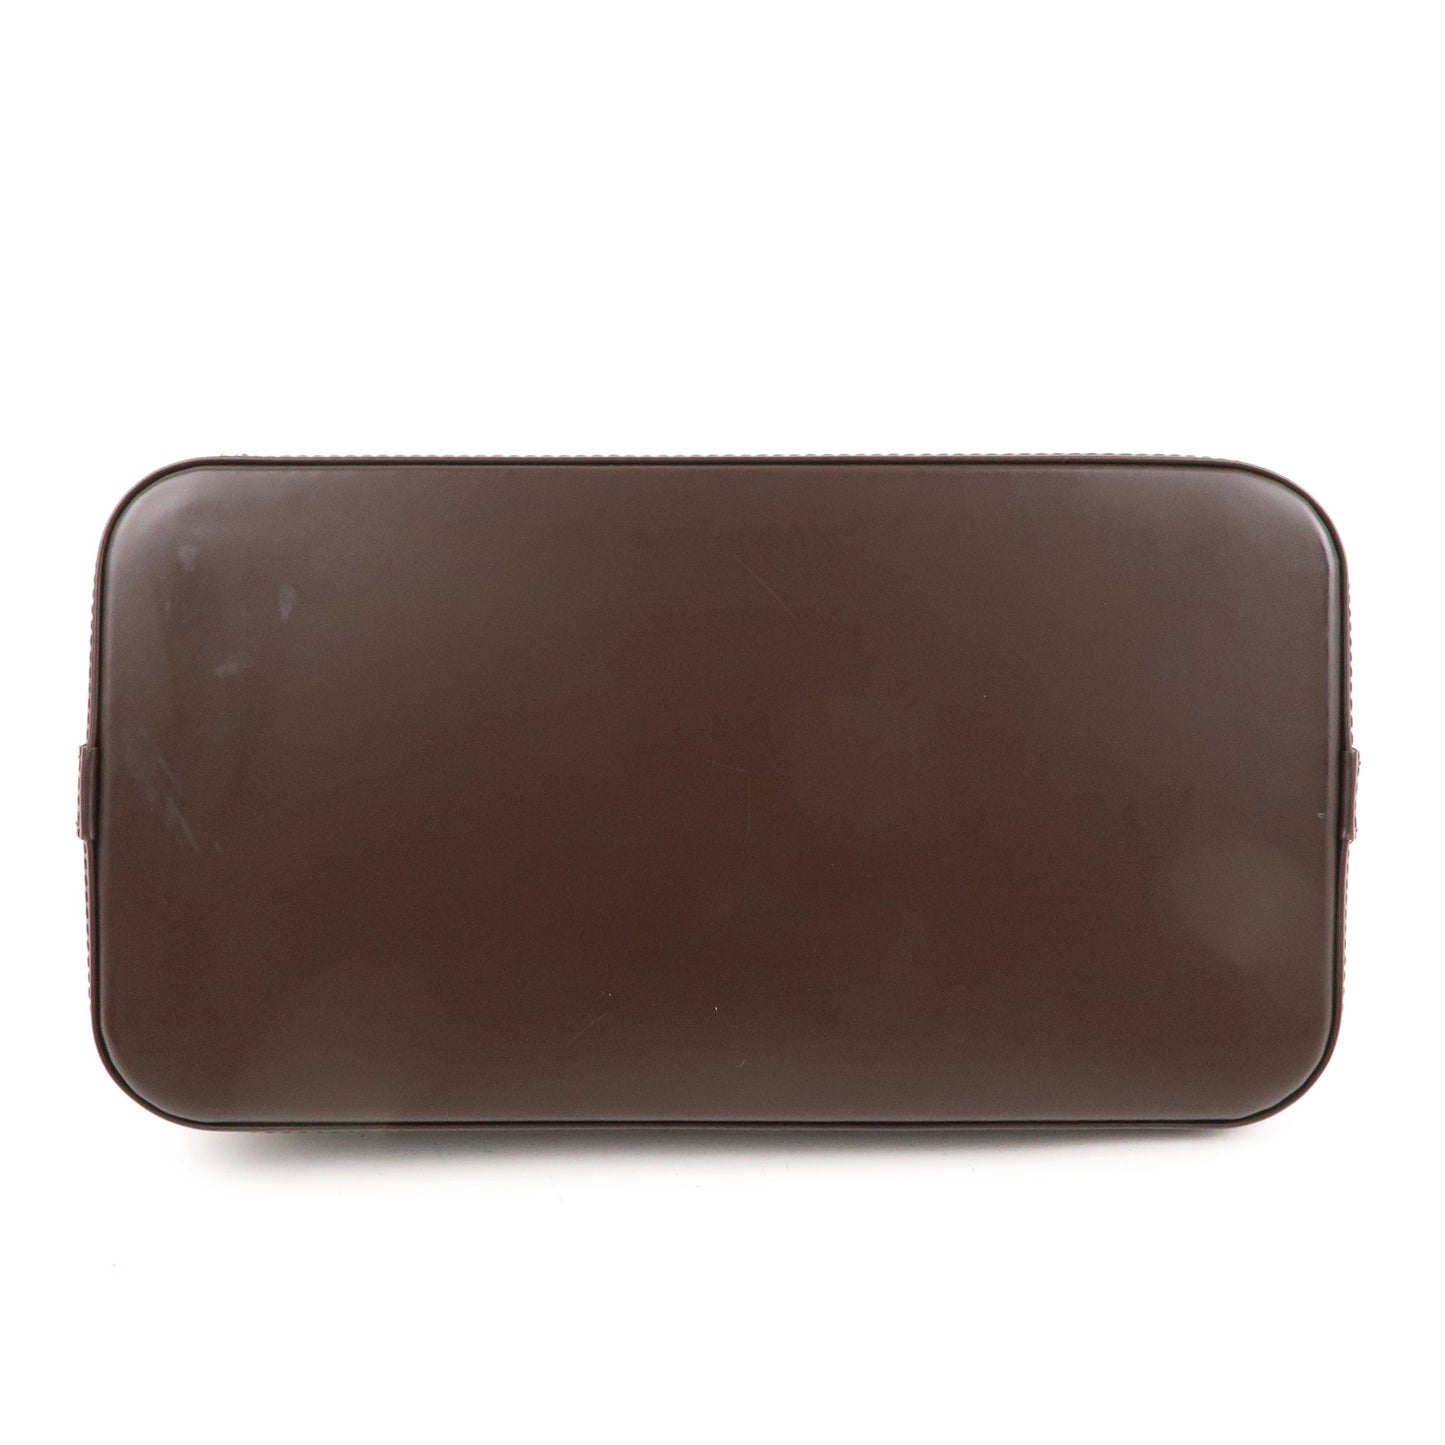 Louis Vuitton Damier Alma PM Hand Bag Brown N51131